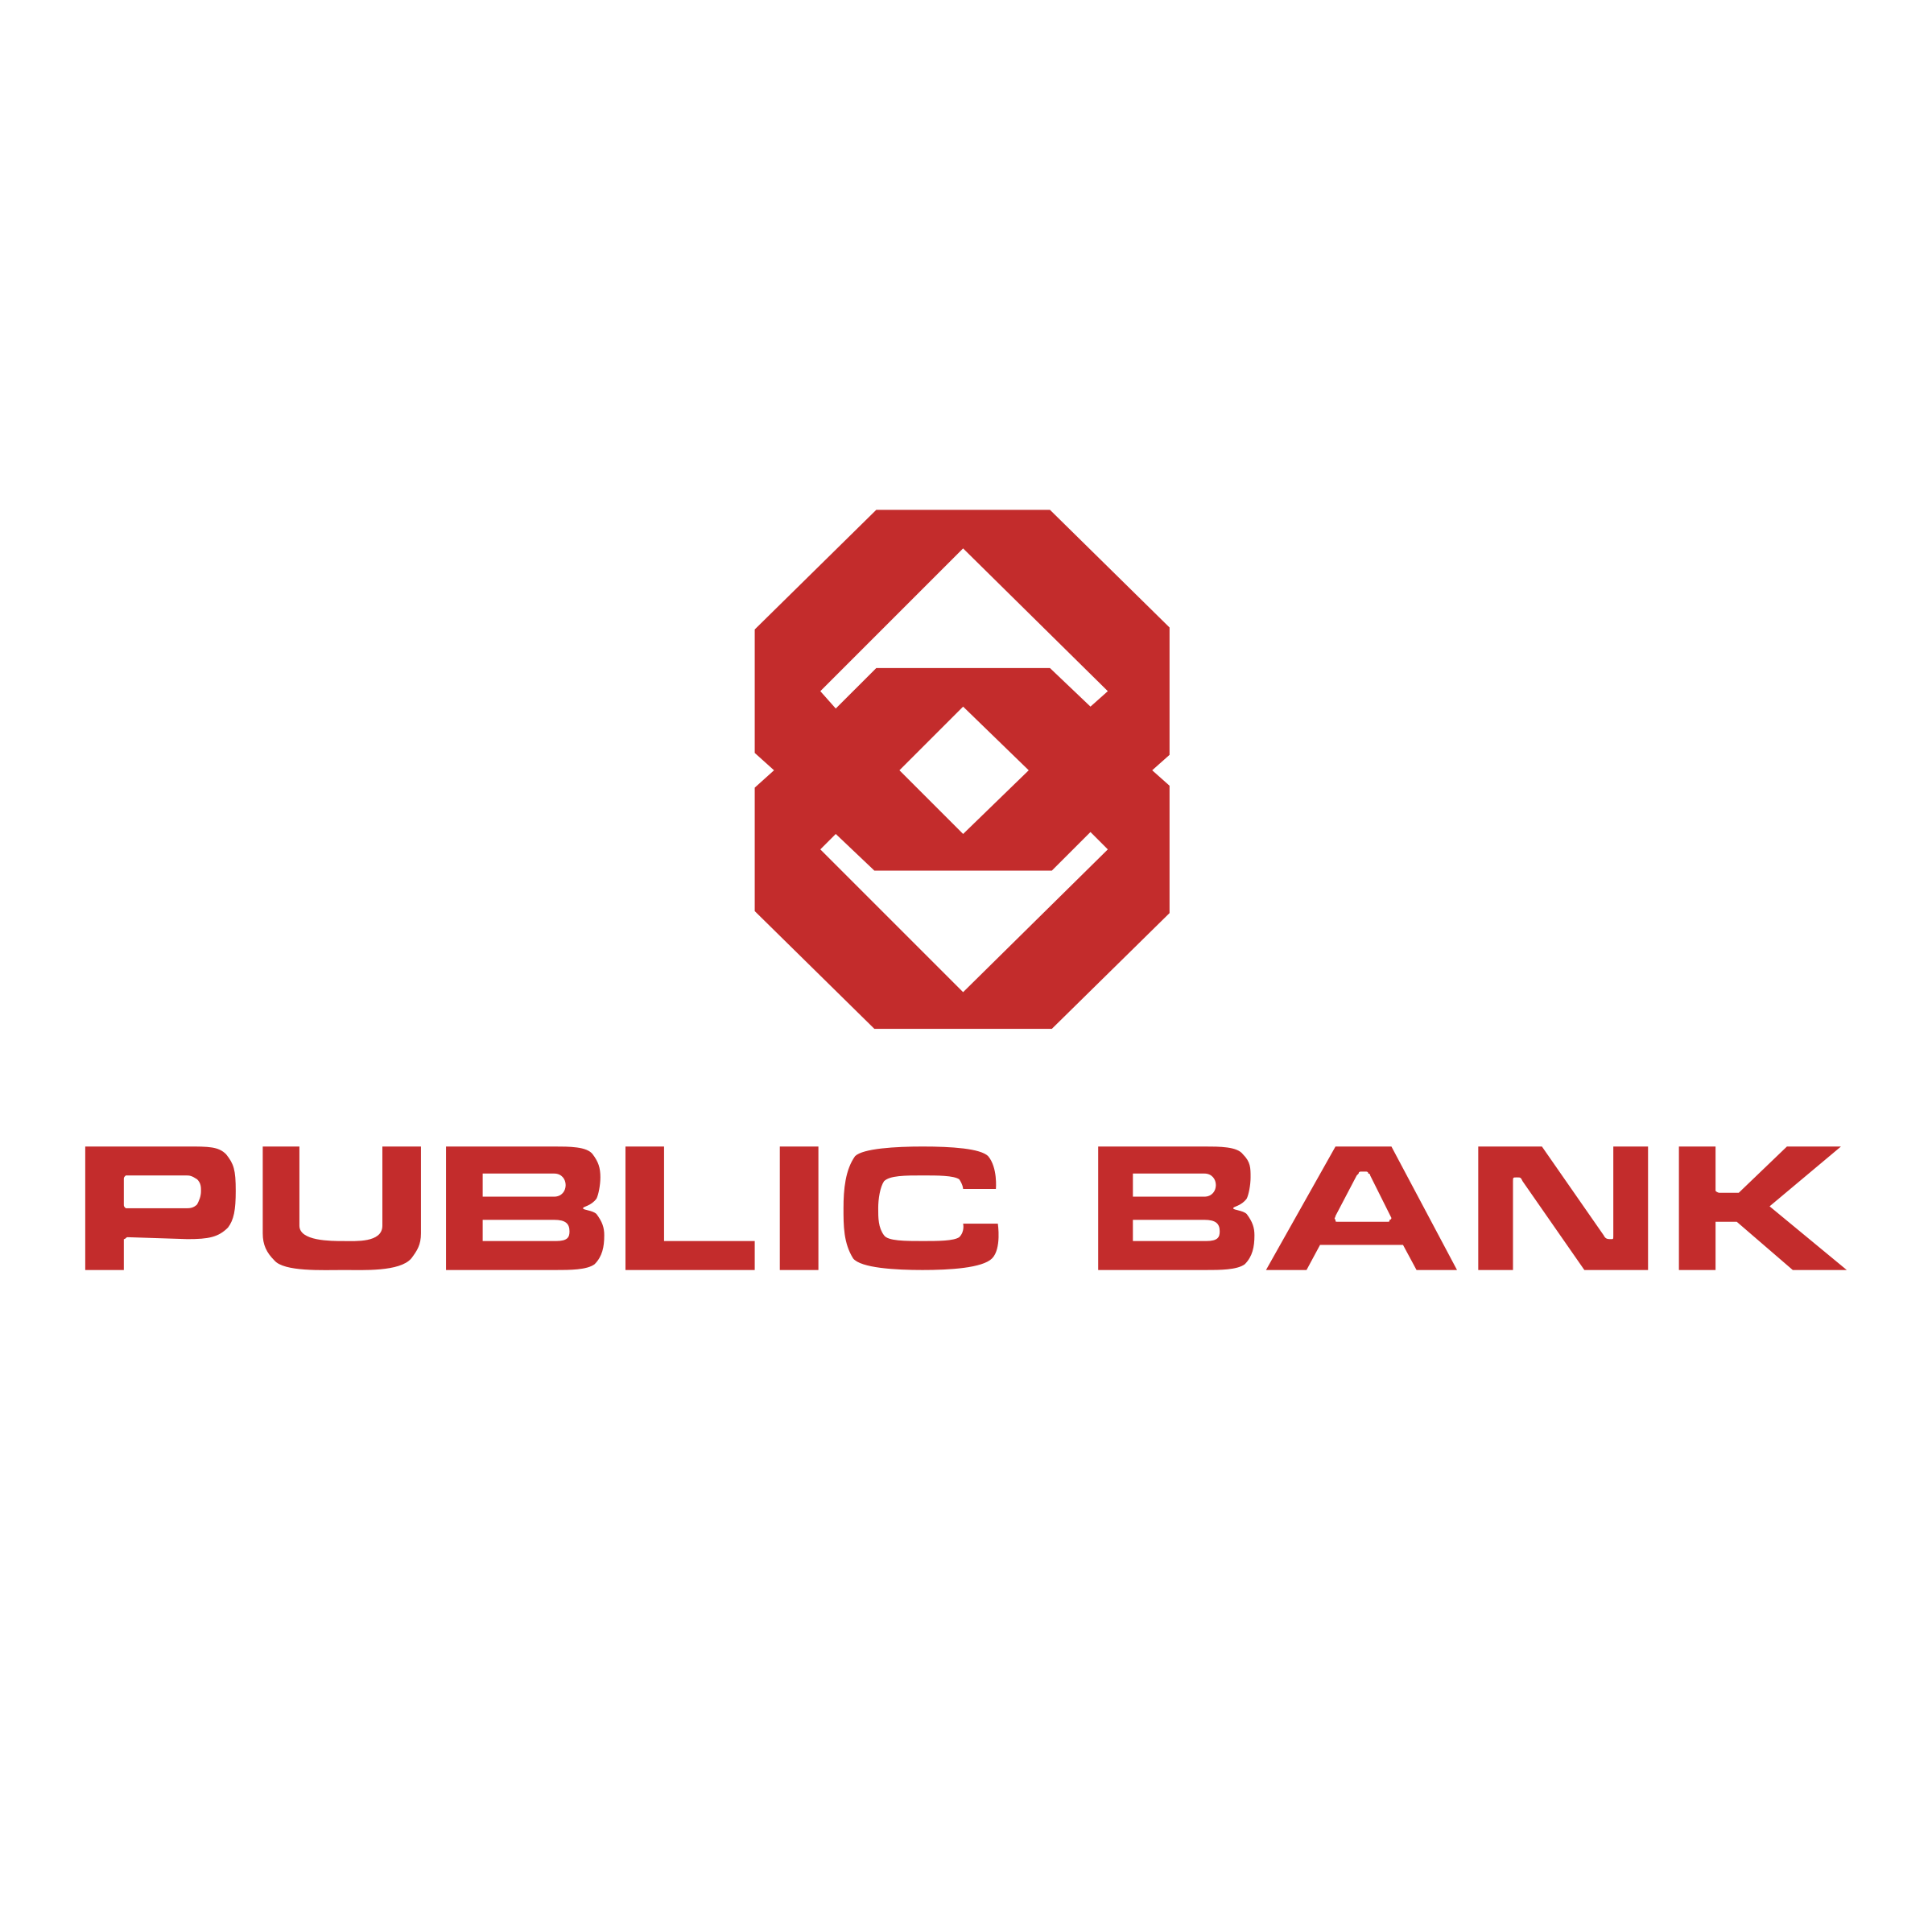 Public bank moratorium